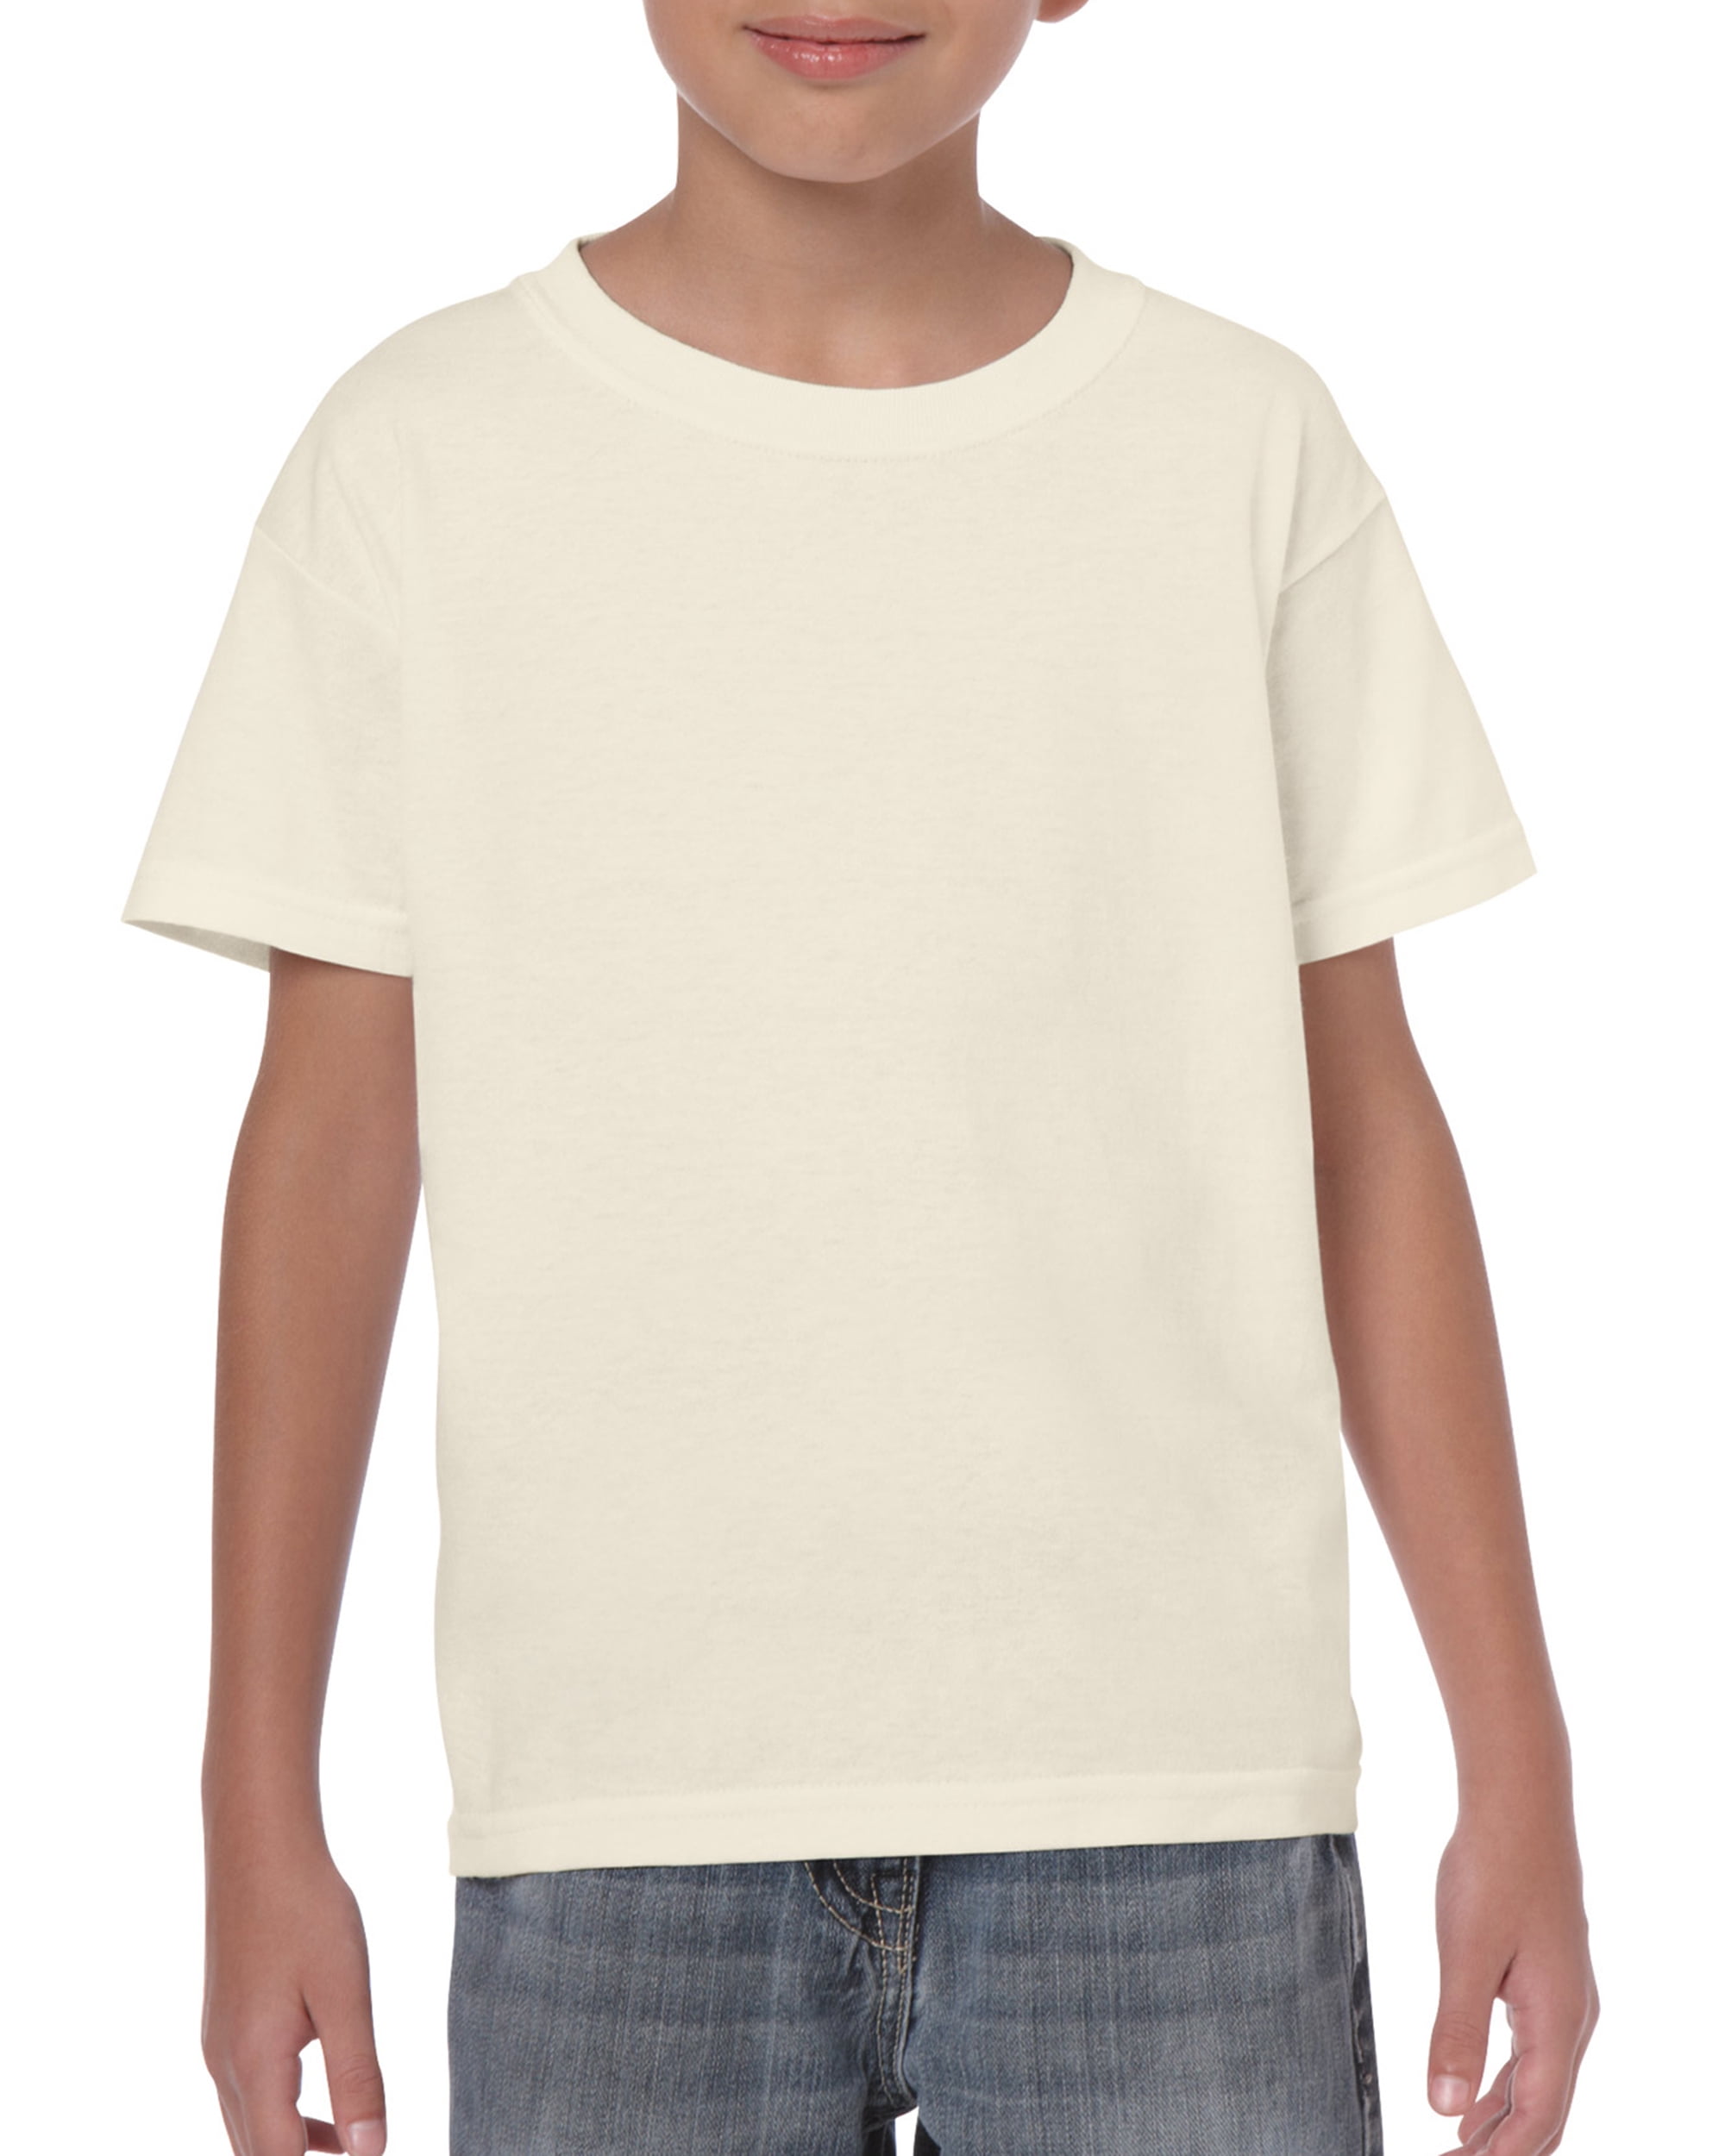 Gildan Kid's 100% Heavy Cotton Short Sleeve Toddler T-Shirt- 2T, White